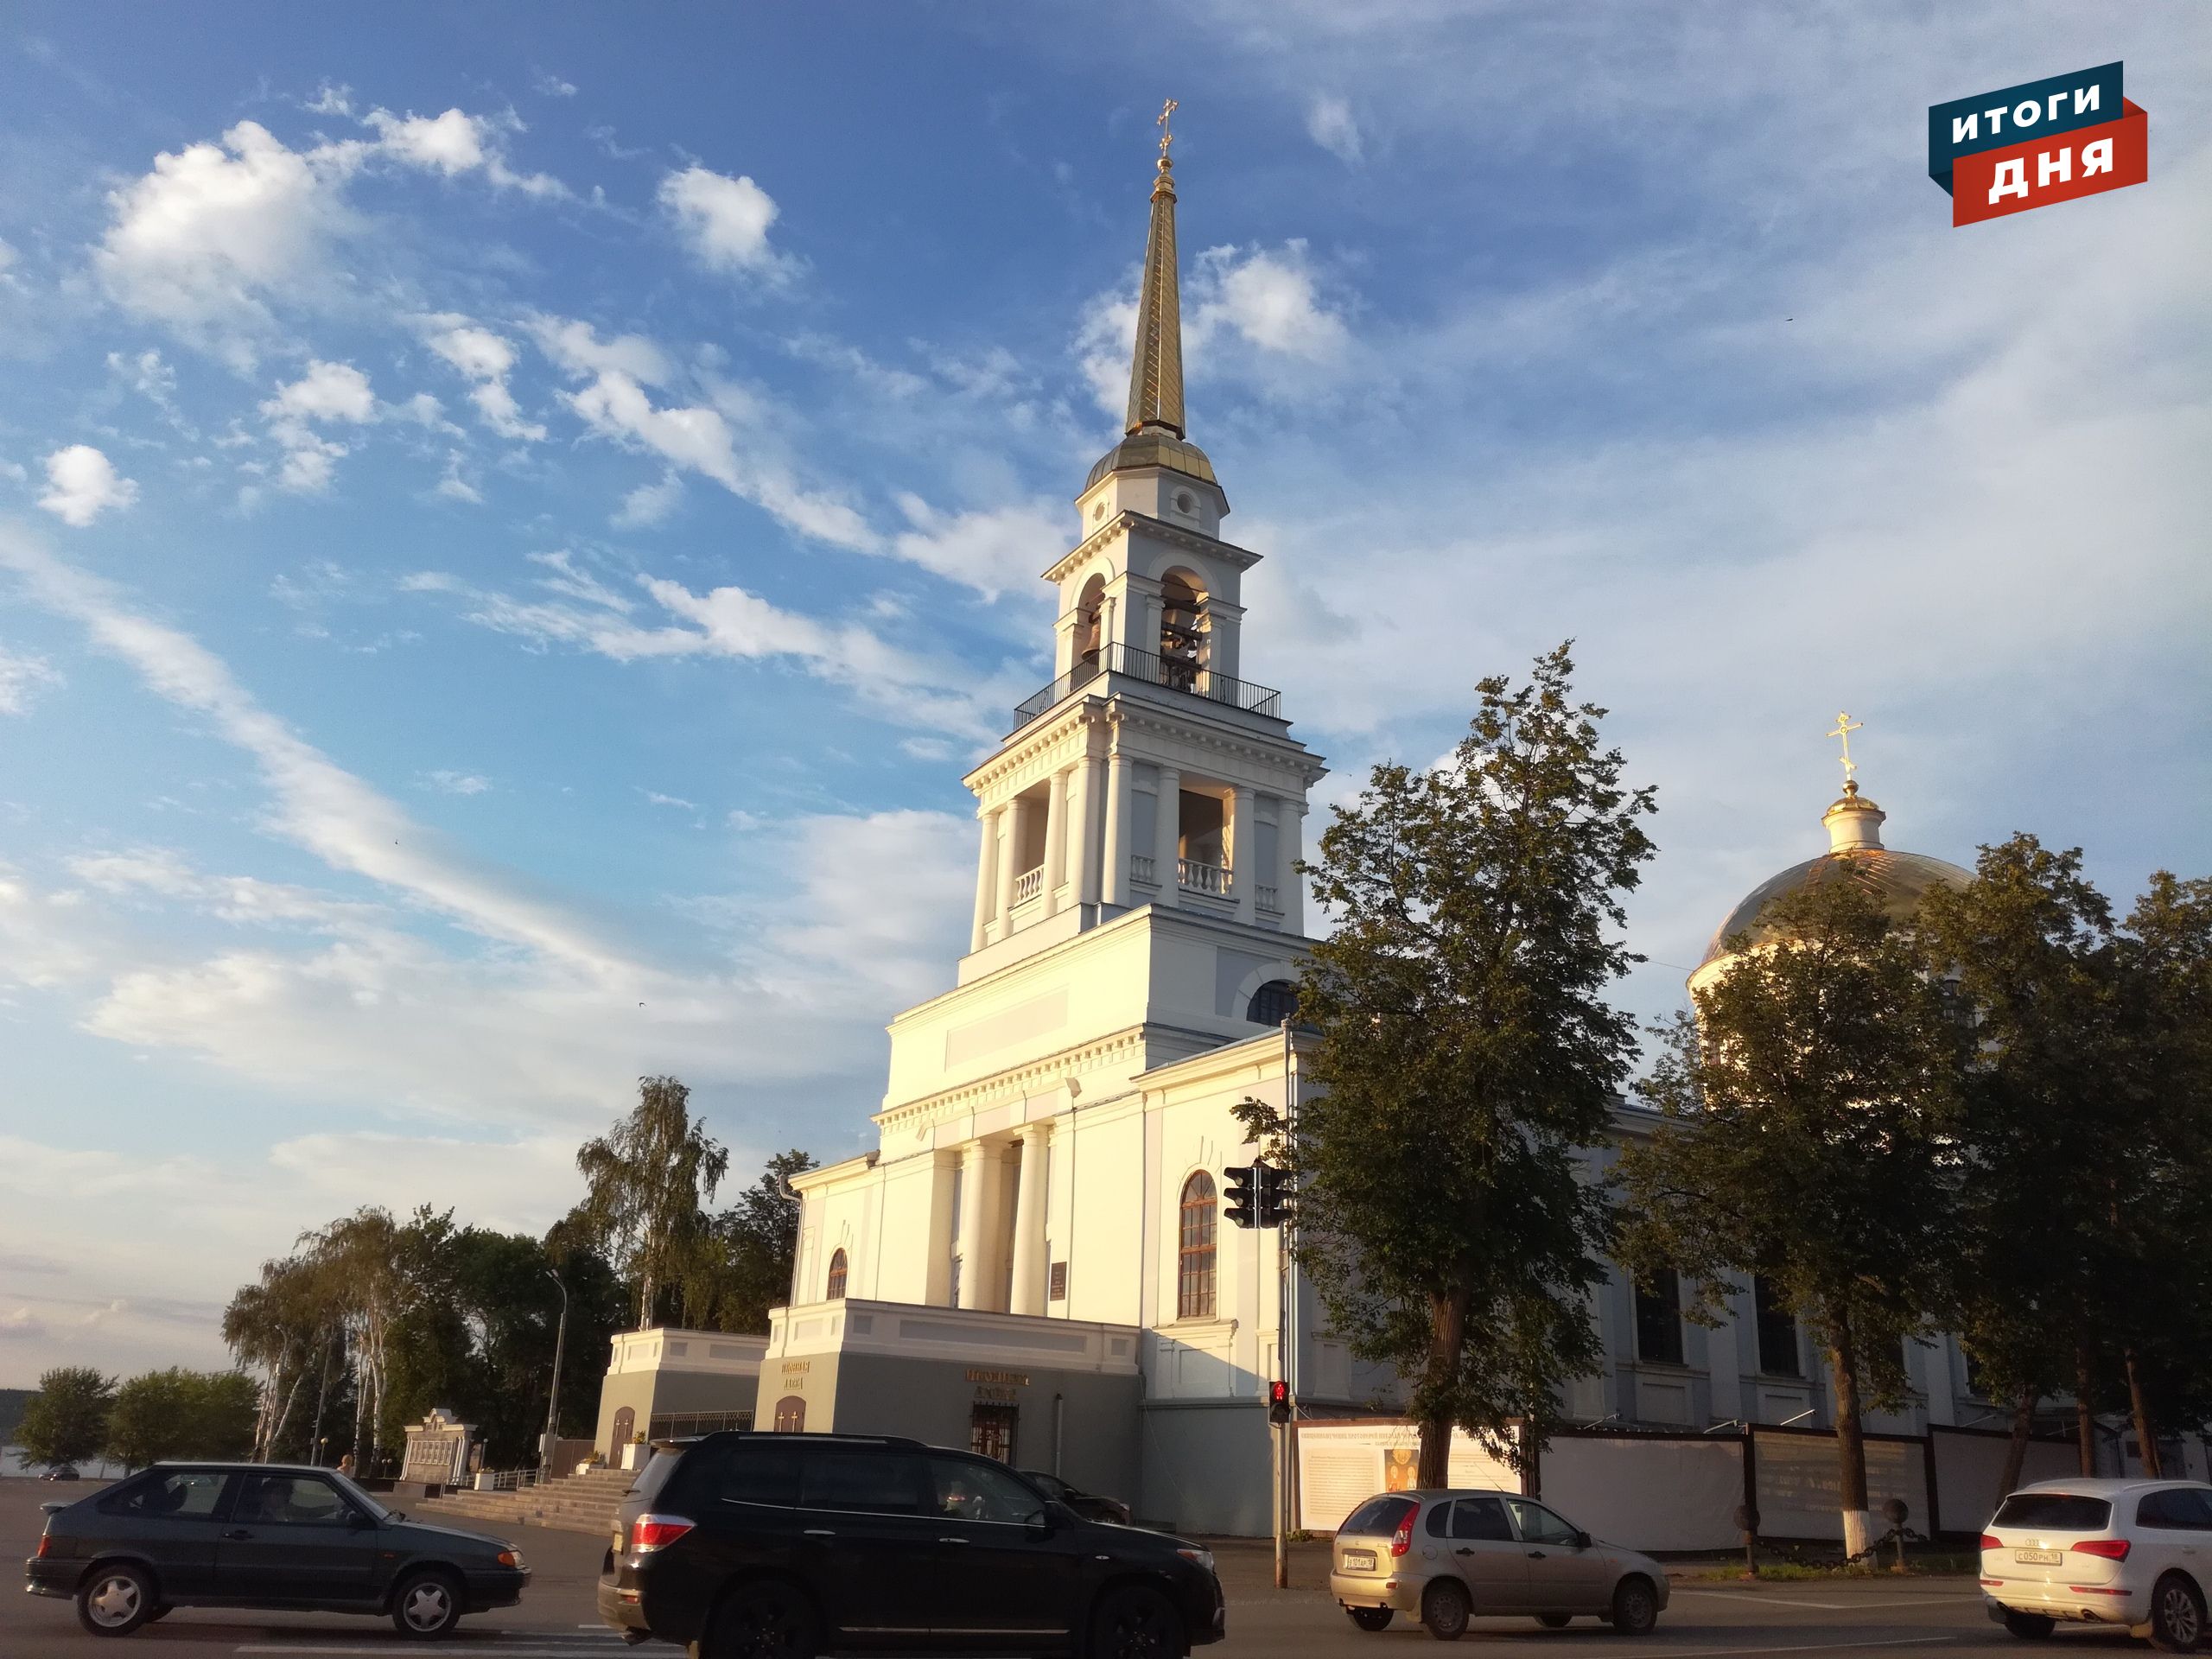 

Итоги дня: проект «Страус» в стенах университета в Ижевске и реставрация 200-летнего собора в Воткинске

